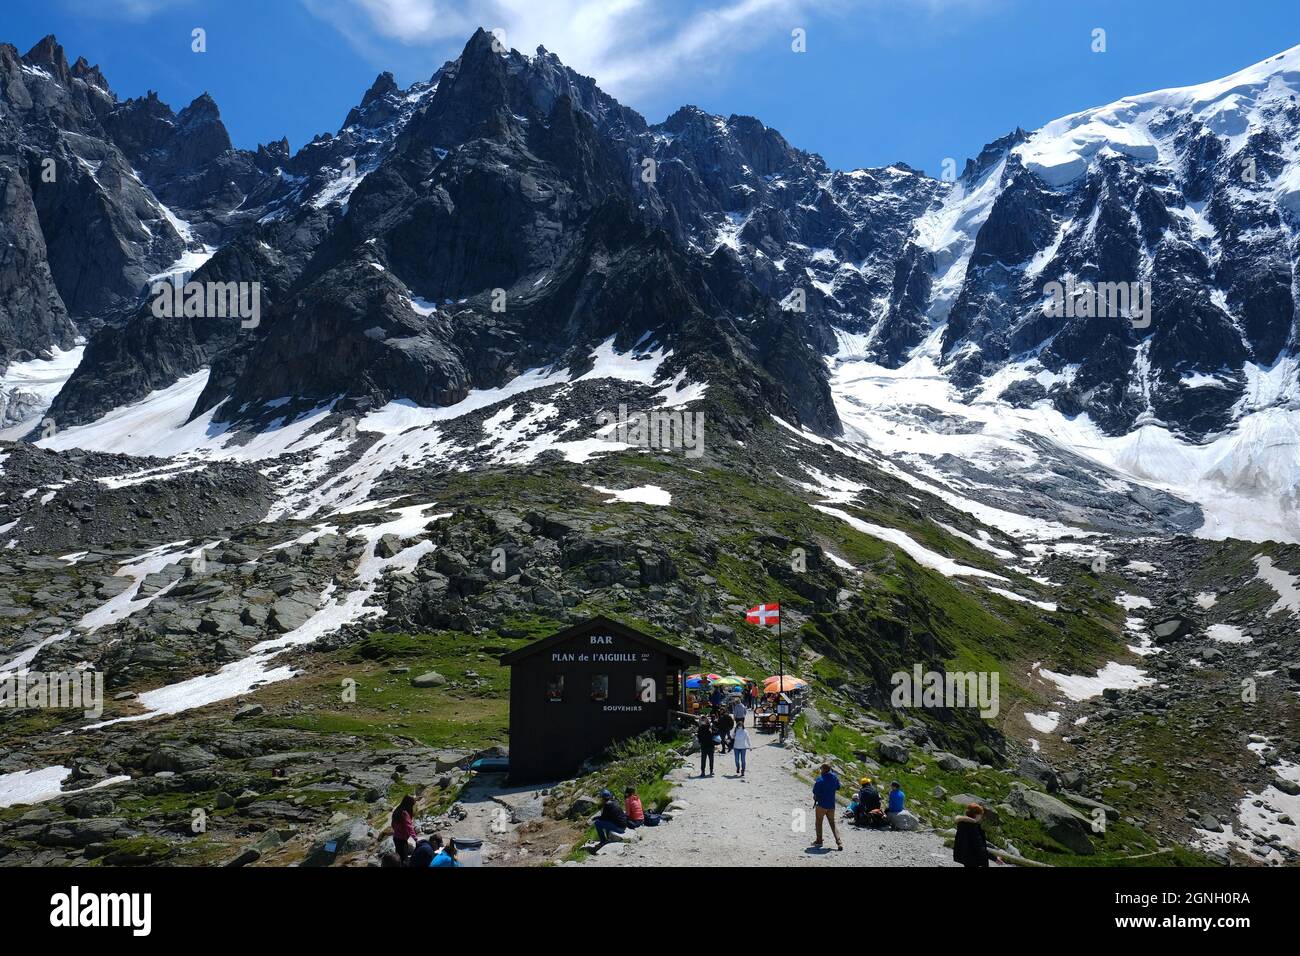 Chamonix, France - July 10, 2021. Landscape with the Chalet at Plan de l'Aiguille and amazing Aiguille du Midi summit, Chamonix, Mont Blanc Stock Photo